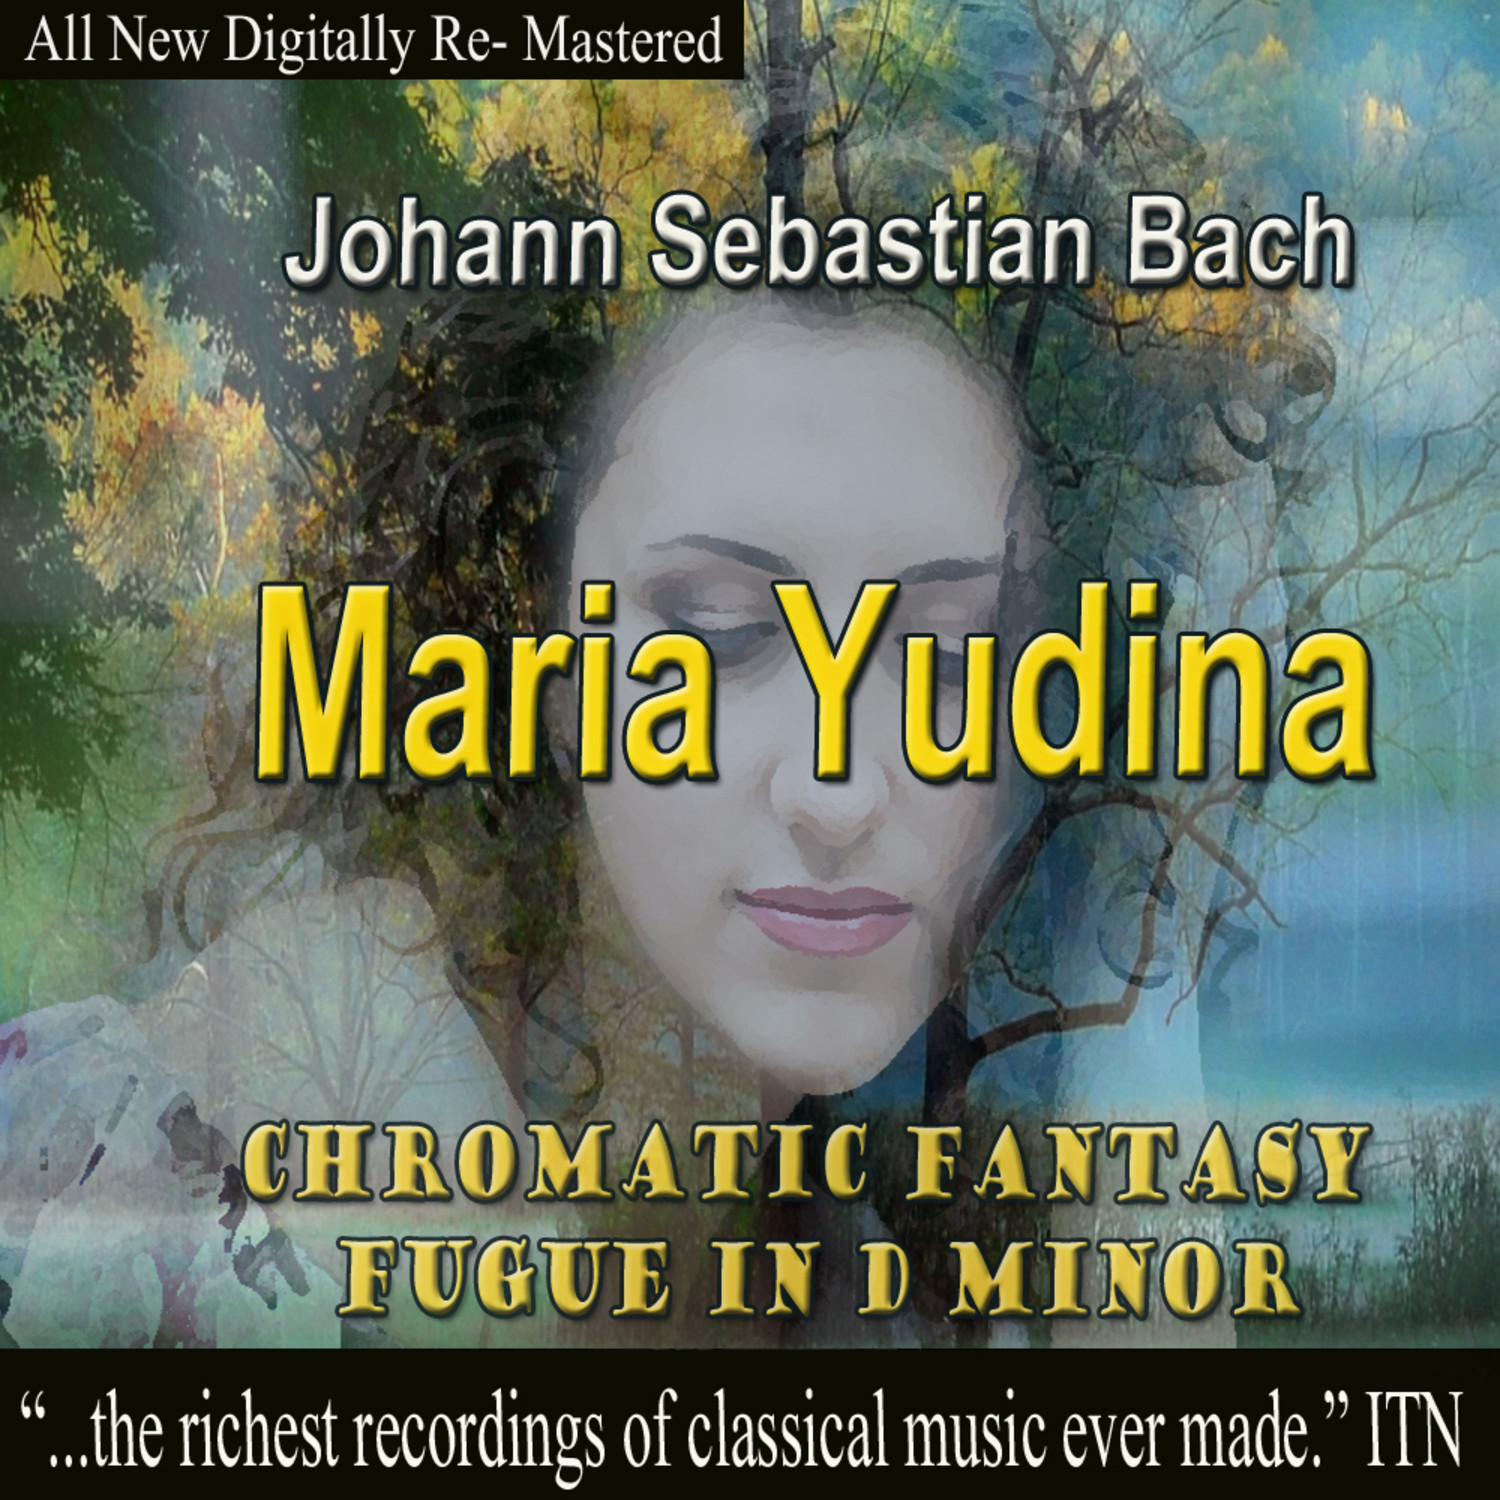 Johann Sebastian Bach - Maria Yudina, Chromatic Fantasy Fugue in D Minor